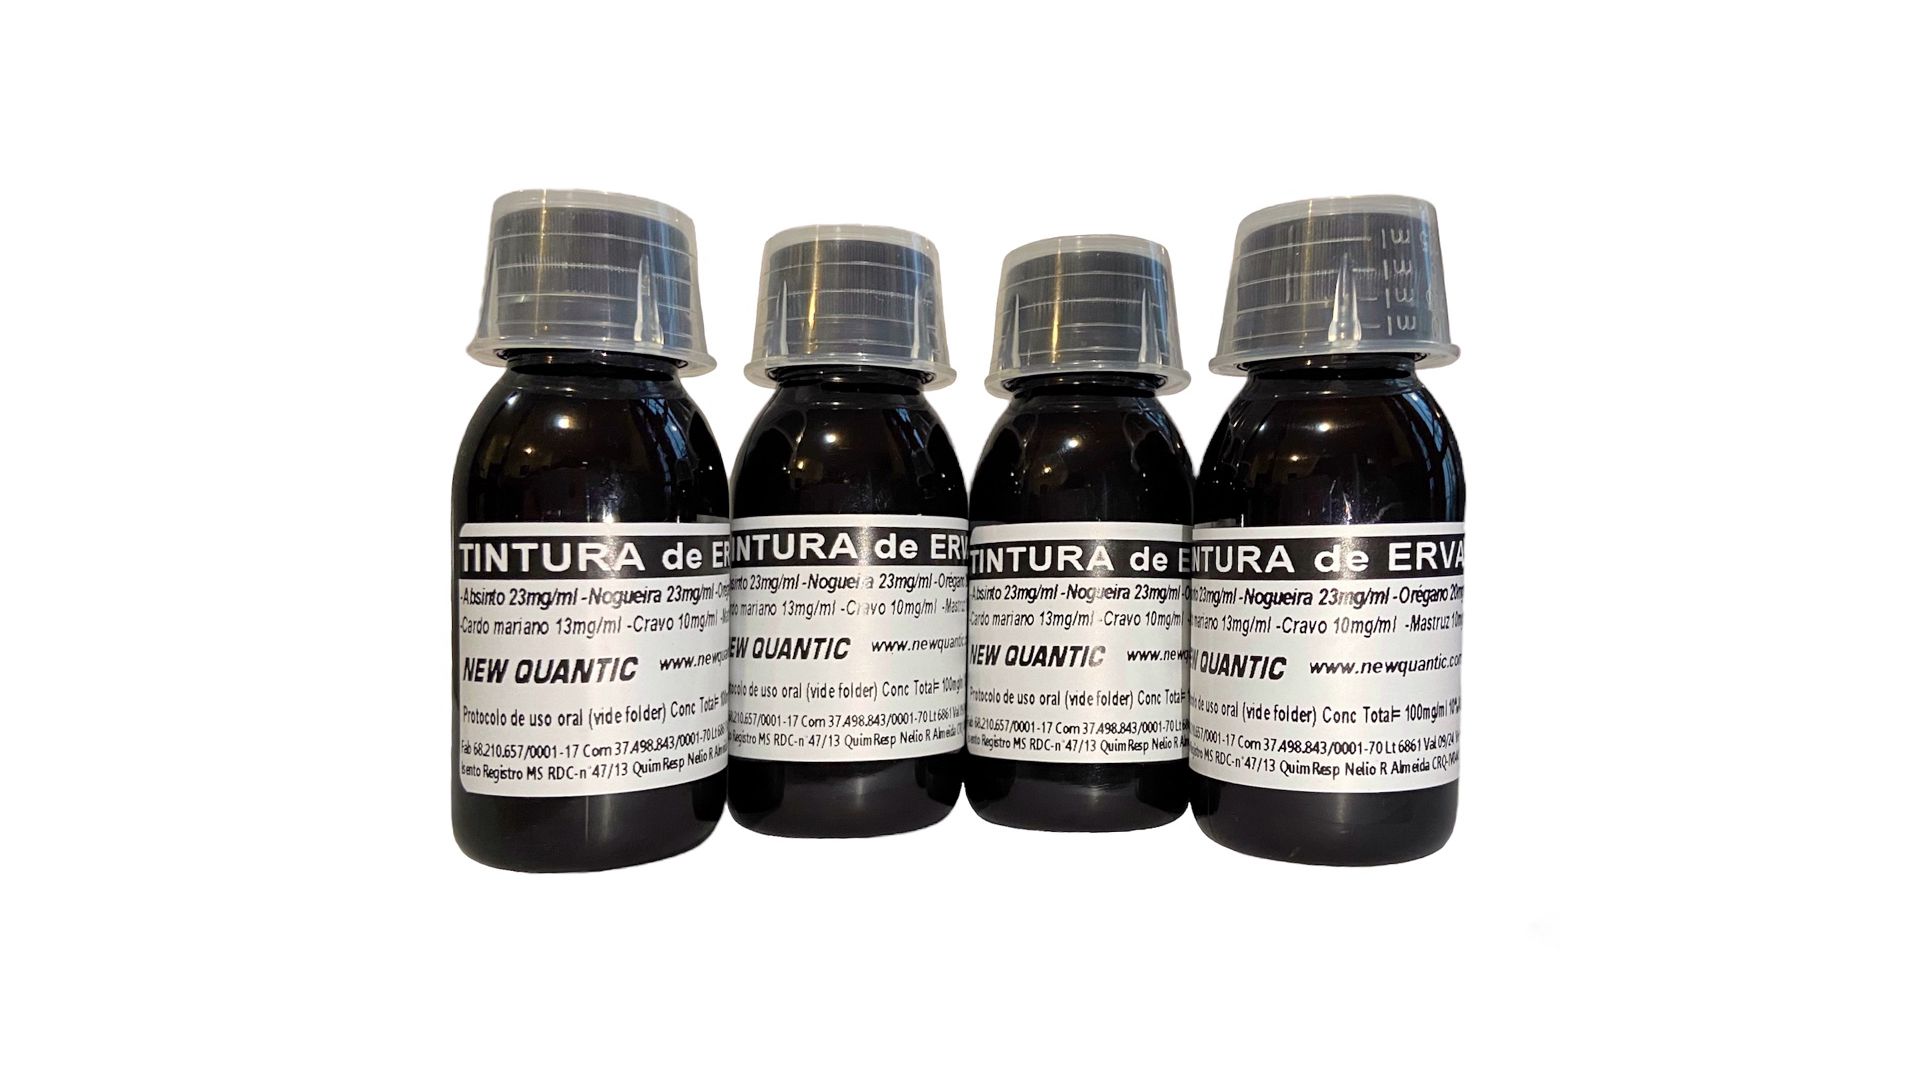 Kit com 4 Tinturas desparasitantes 6 Ervas New Quantic – Curativo hepático/ Hipotensor/ Antioxidante/ Diurético